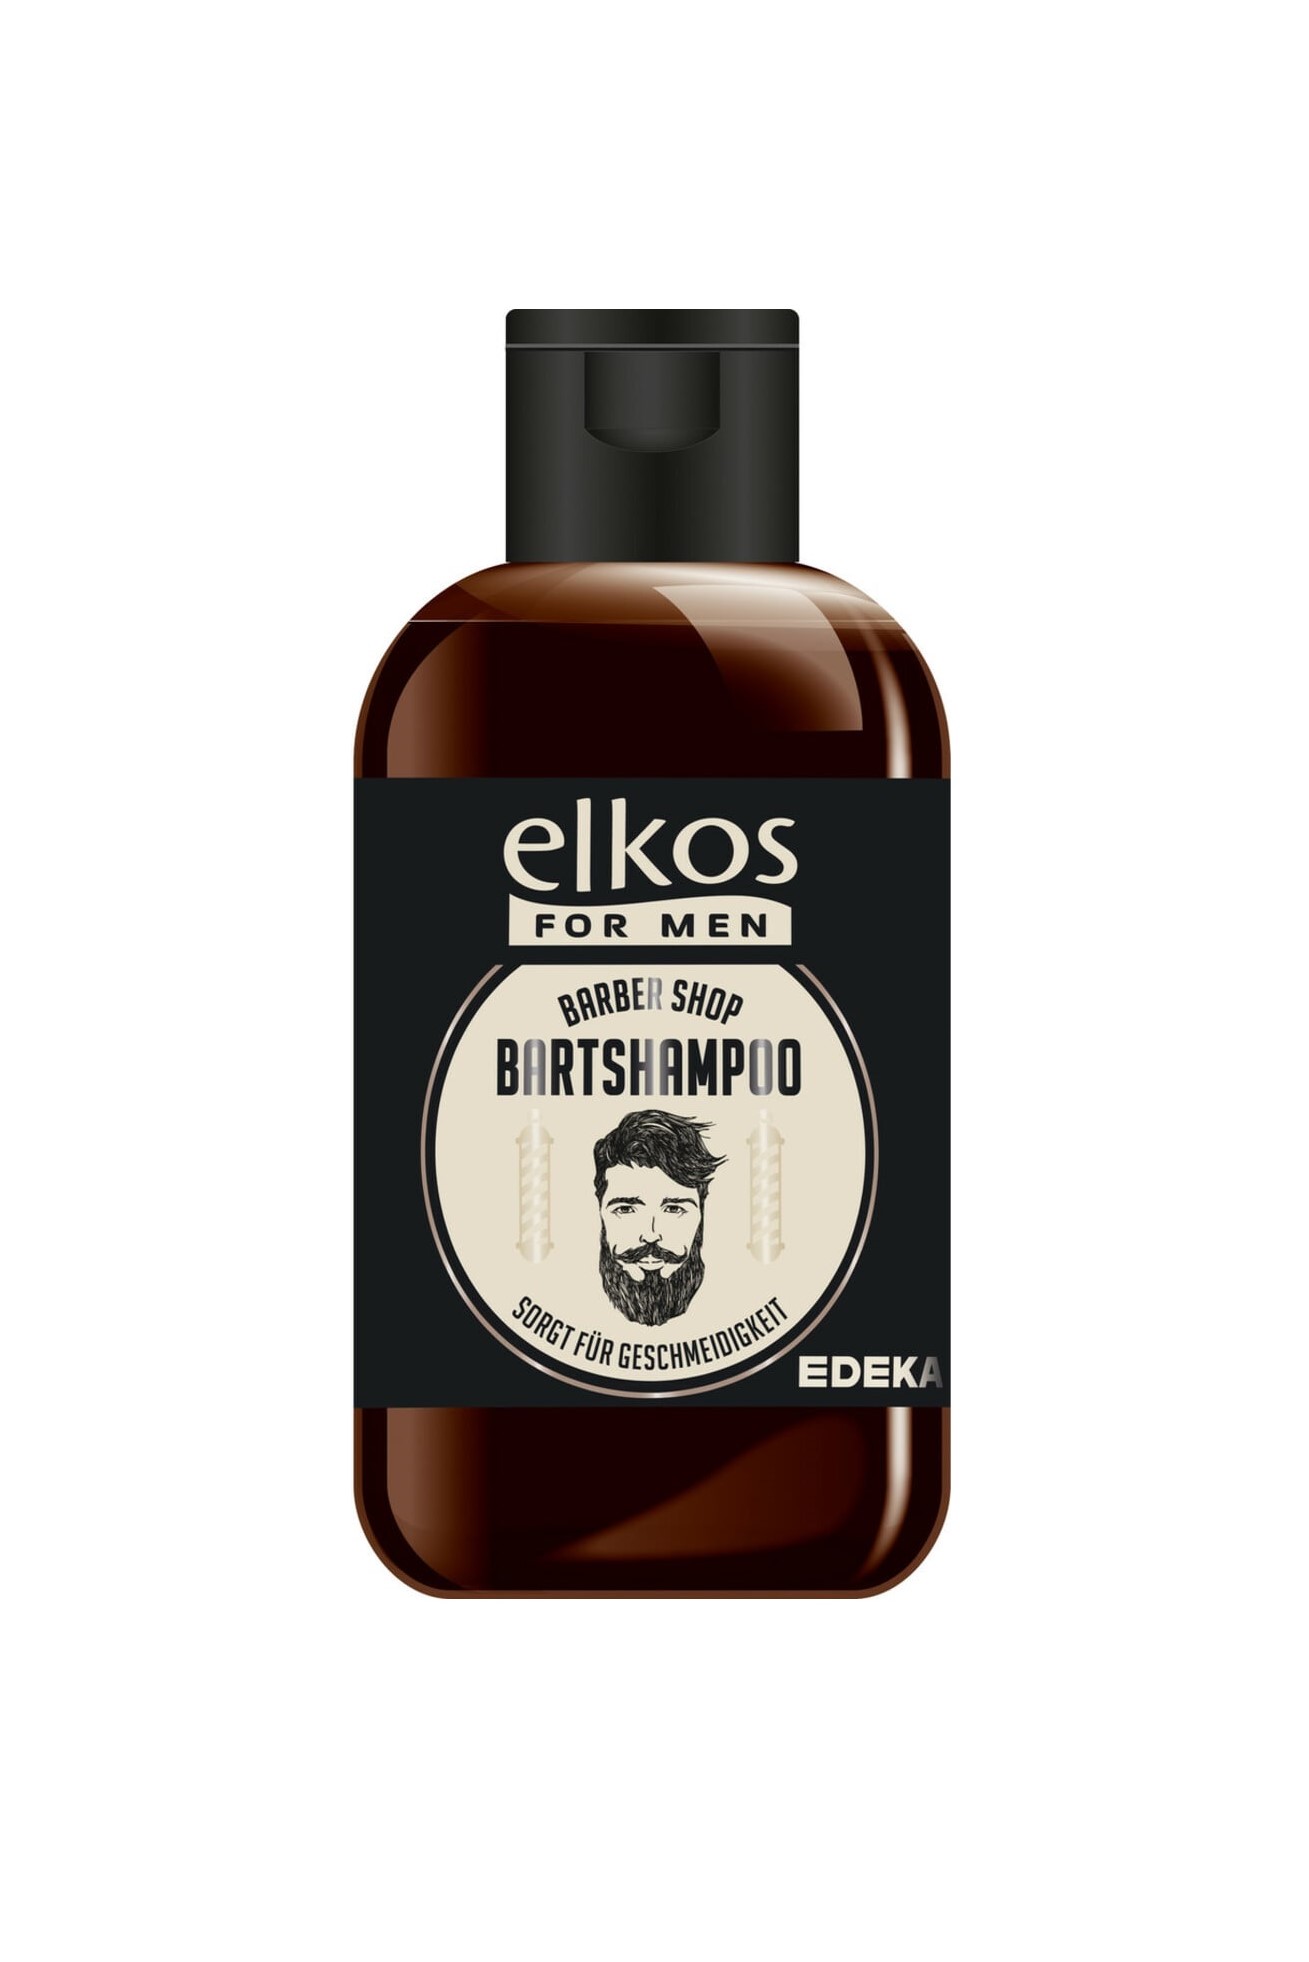 Elkos for Men šampon na vousy 100 ml Bartshampoo